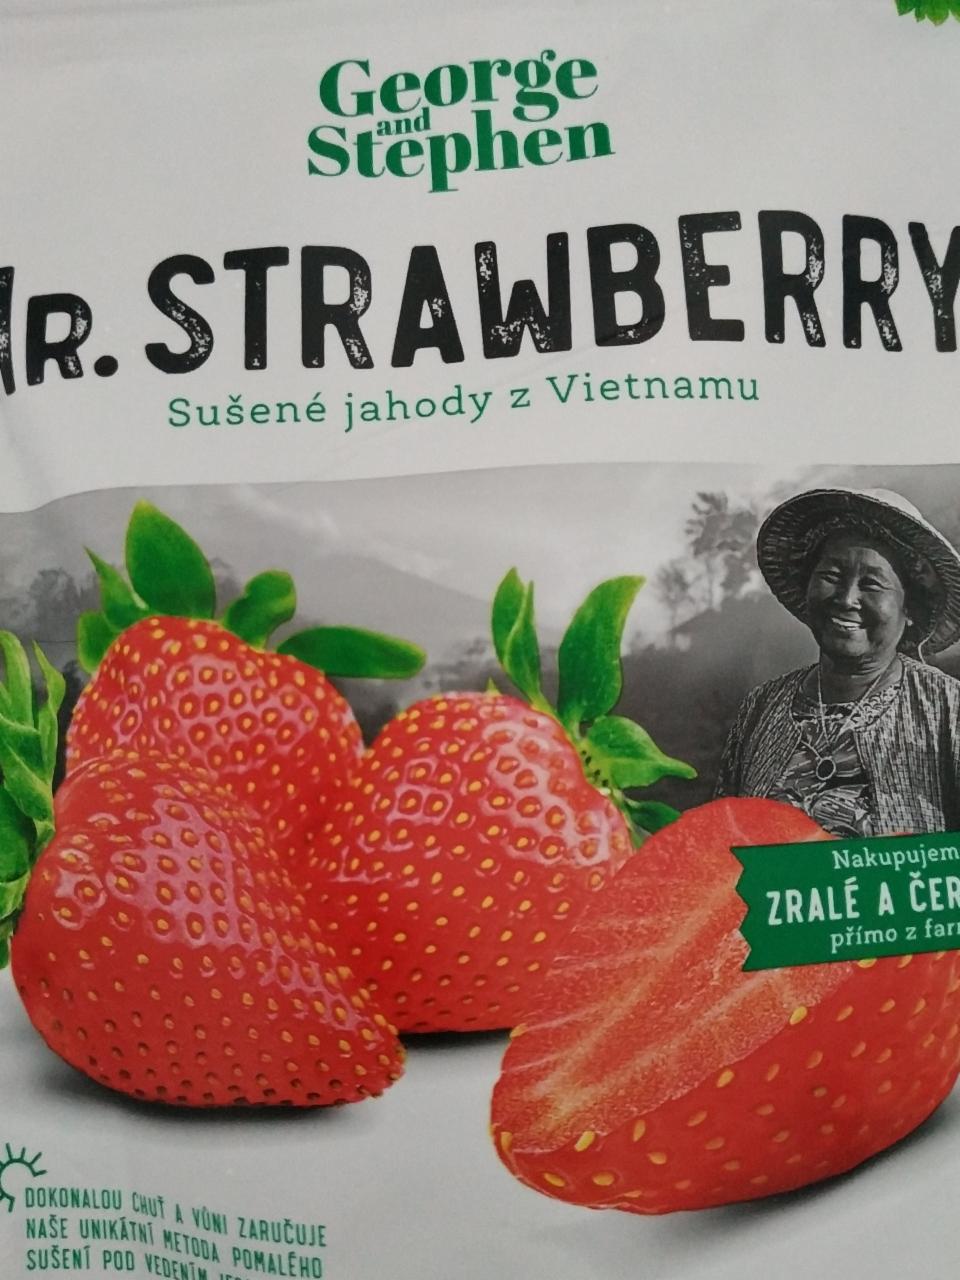 Fotografie - Mr. Strawberry sušené jahody z Vietnamu George and Stephen